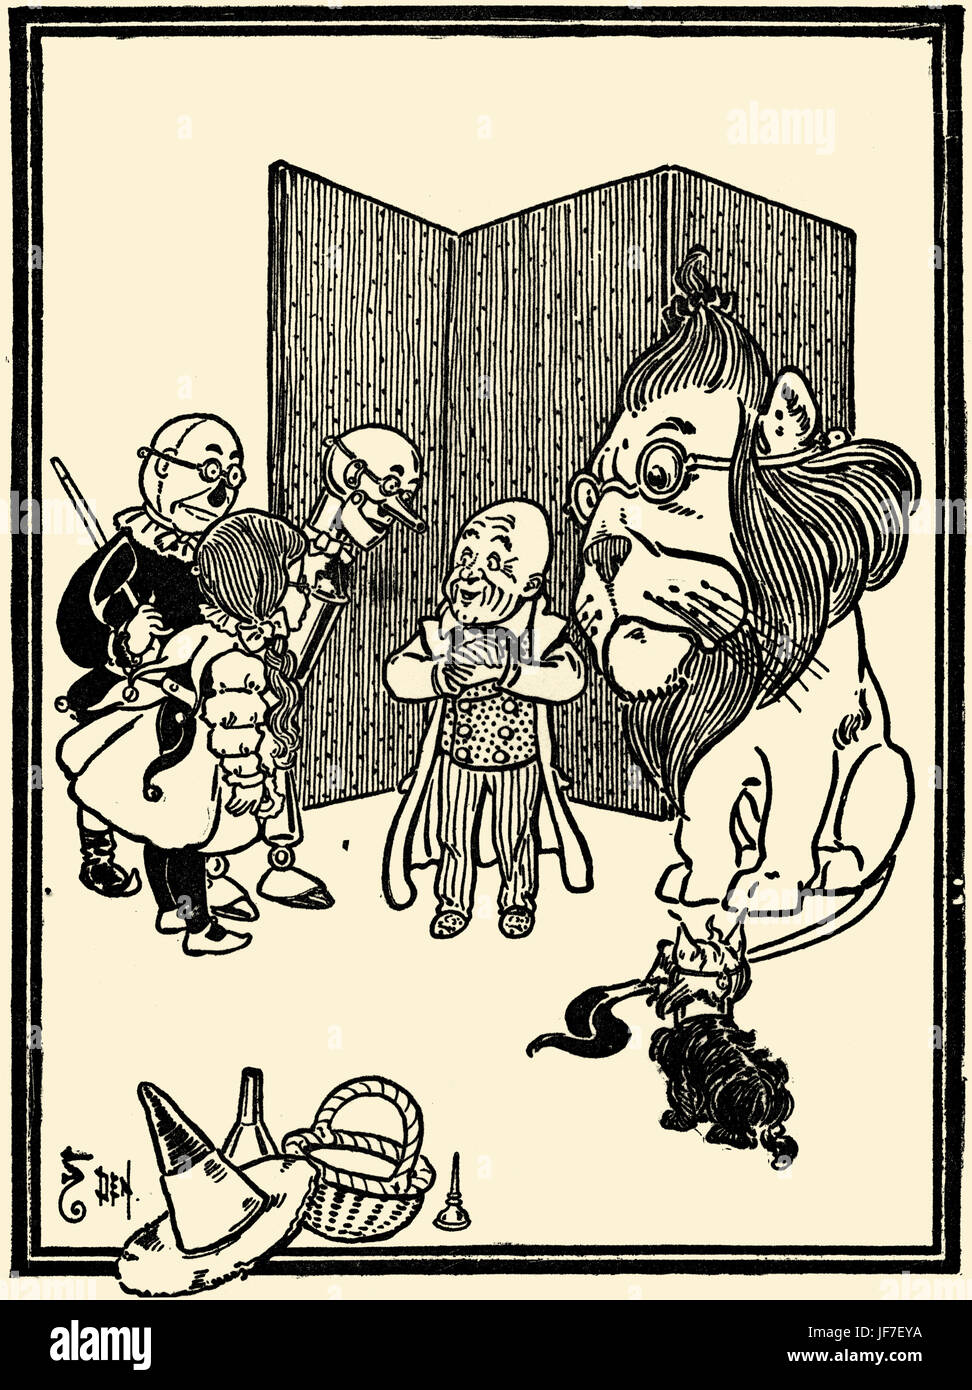 Der Zauberer von Oz von L. Frank Baum Buch. Illustration von w. Denslow. Bildunterschrift: Genau so! Ich bin ein Humbug. (Großer Zauberer). Herausgegeben von Bobbs-Merill. US-amerikanischer Autor, 15. Mai 1856 – 6. Mai 1919 Stockfoto